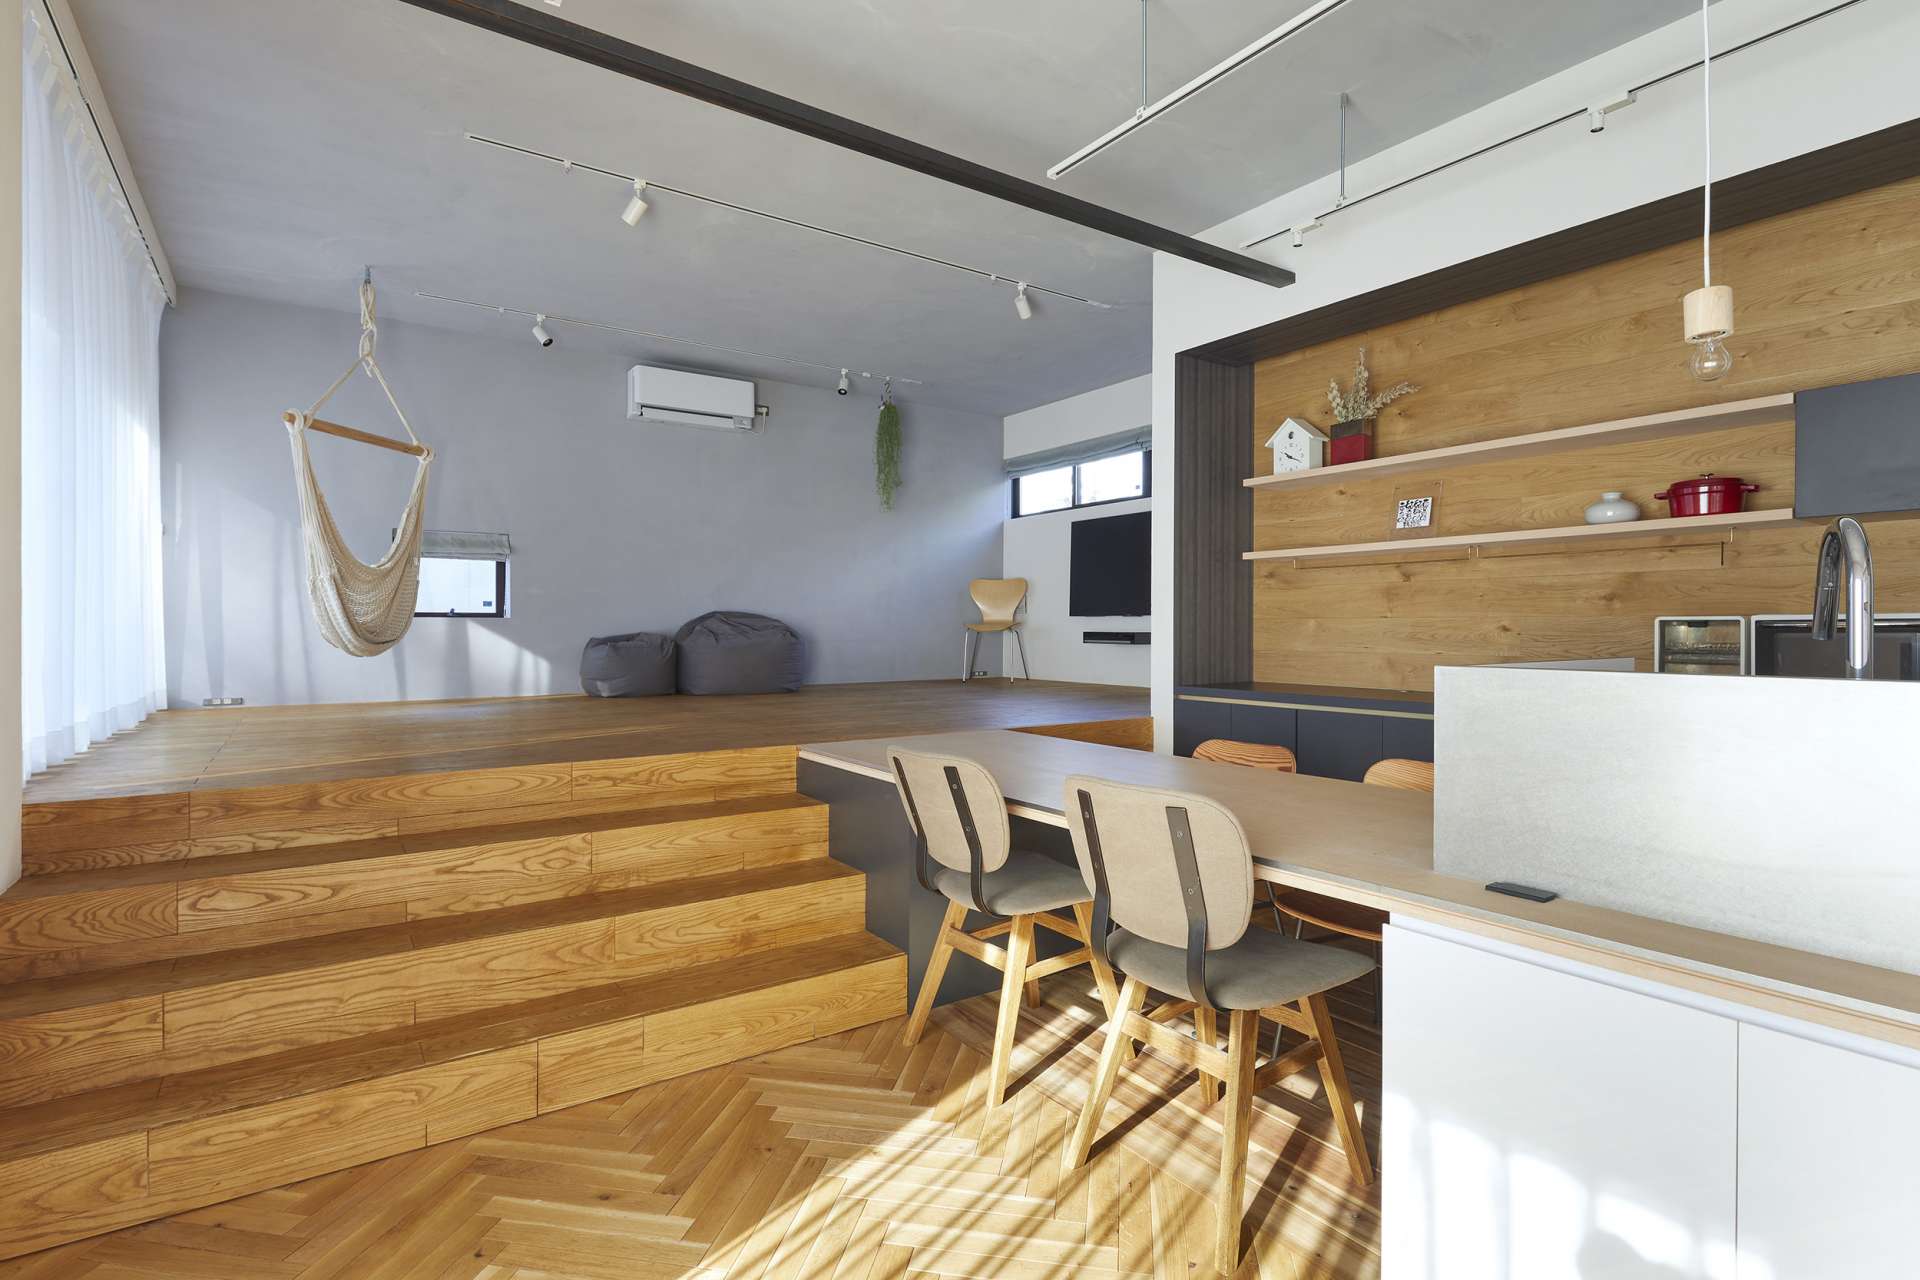 ハウスメーカーでも工務店でもない、設計事務所ならではの快適でおしゃれな注文住宅、デザイン住宅の住宅設計は広島を拠点とする設計事務所asazu design office